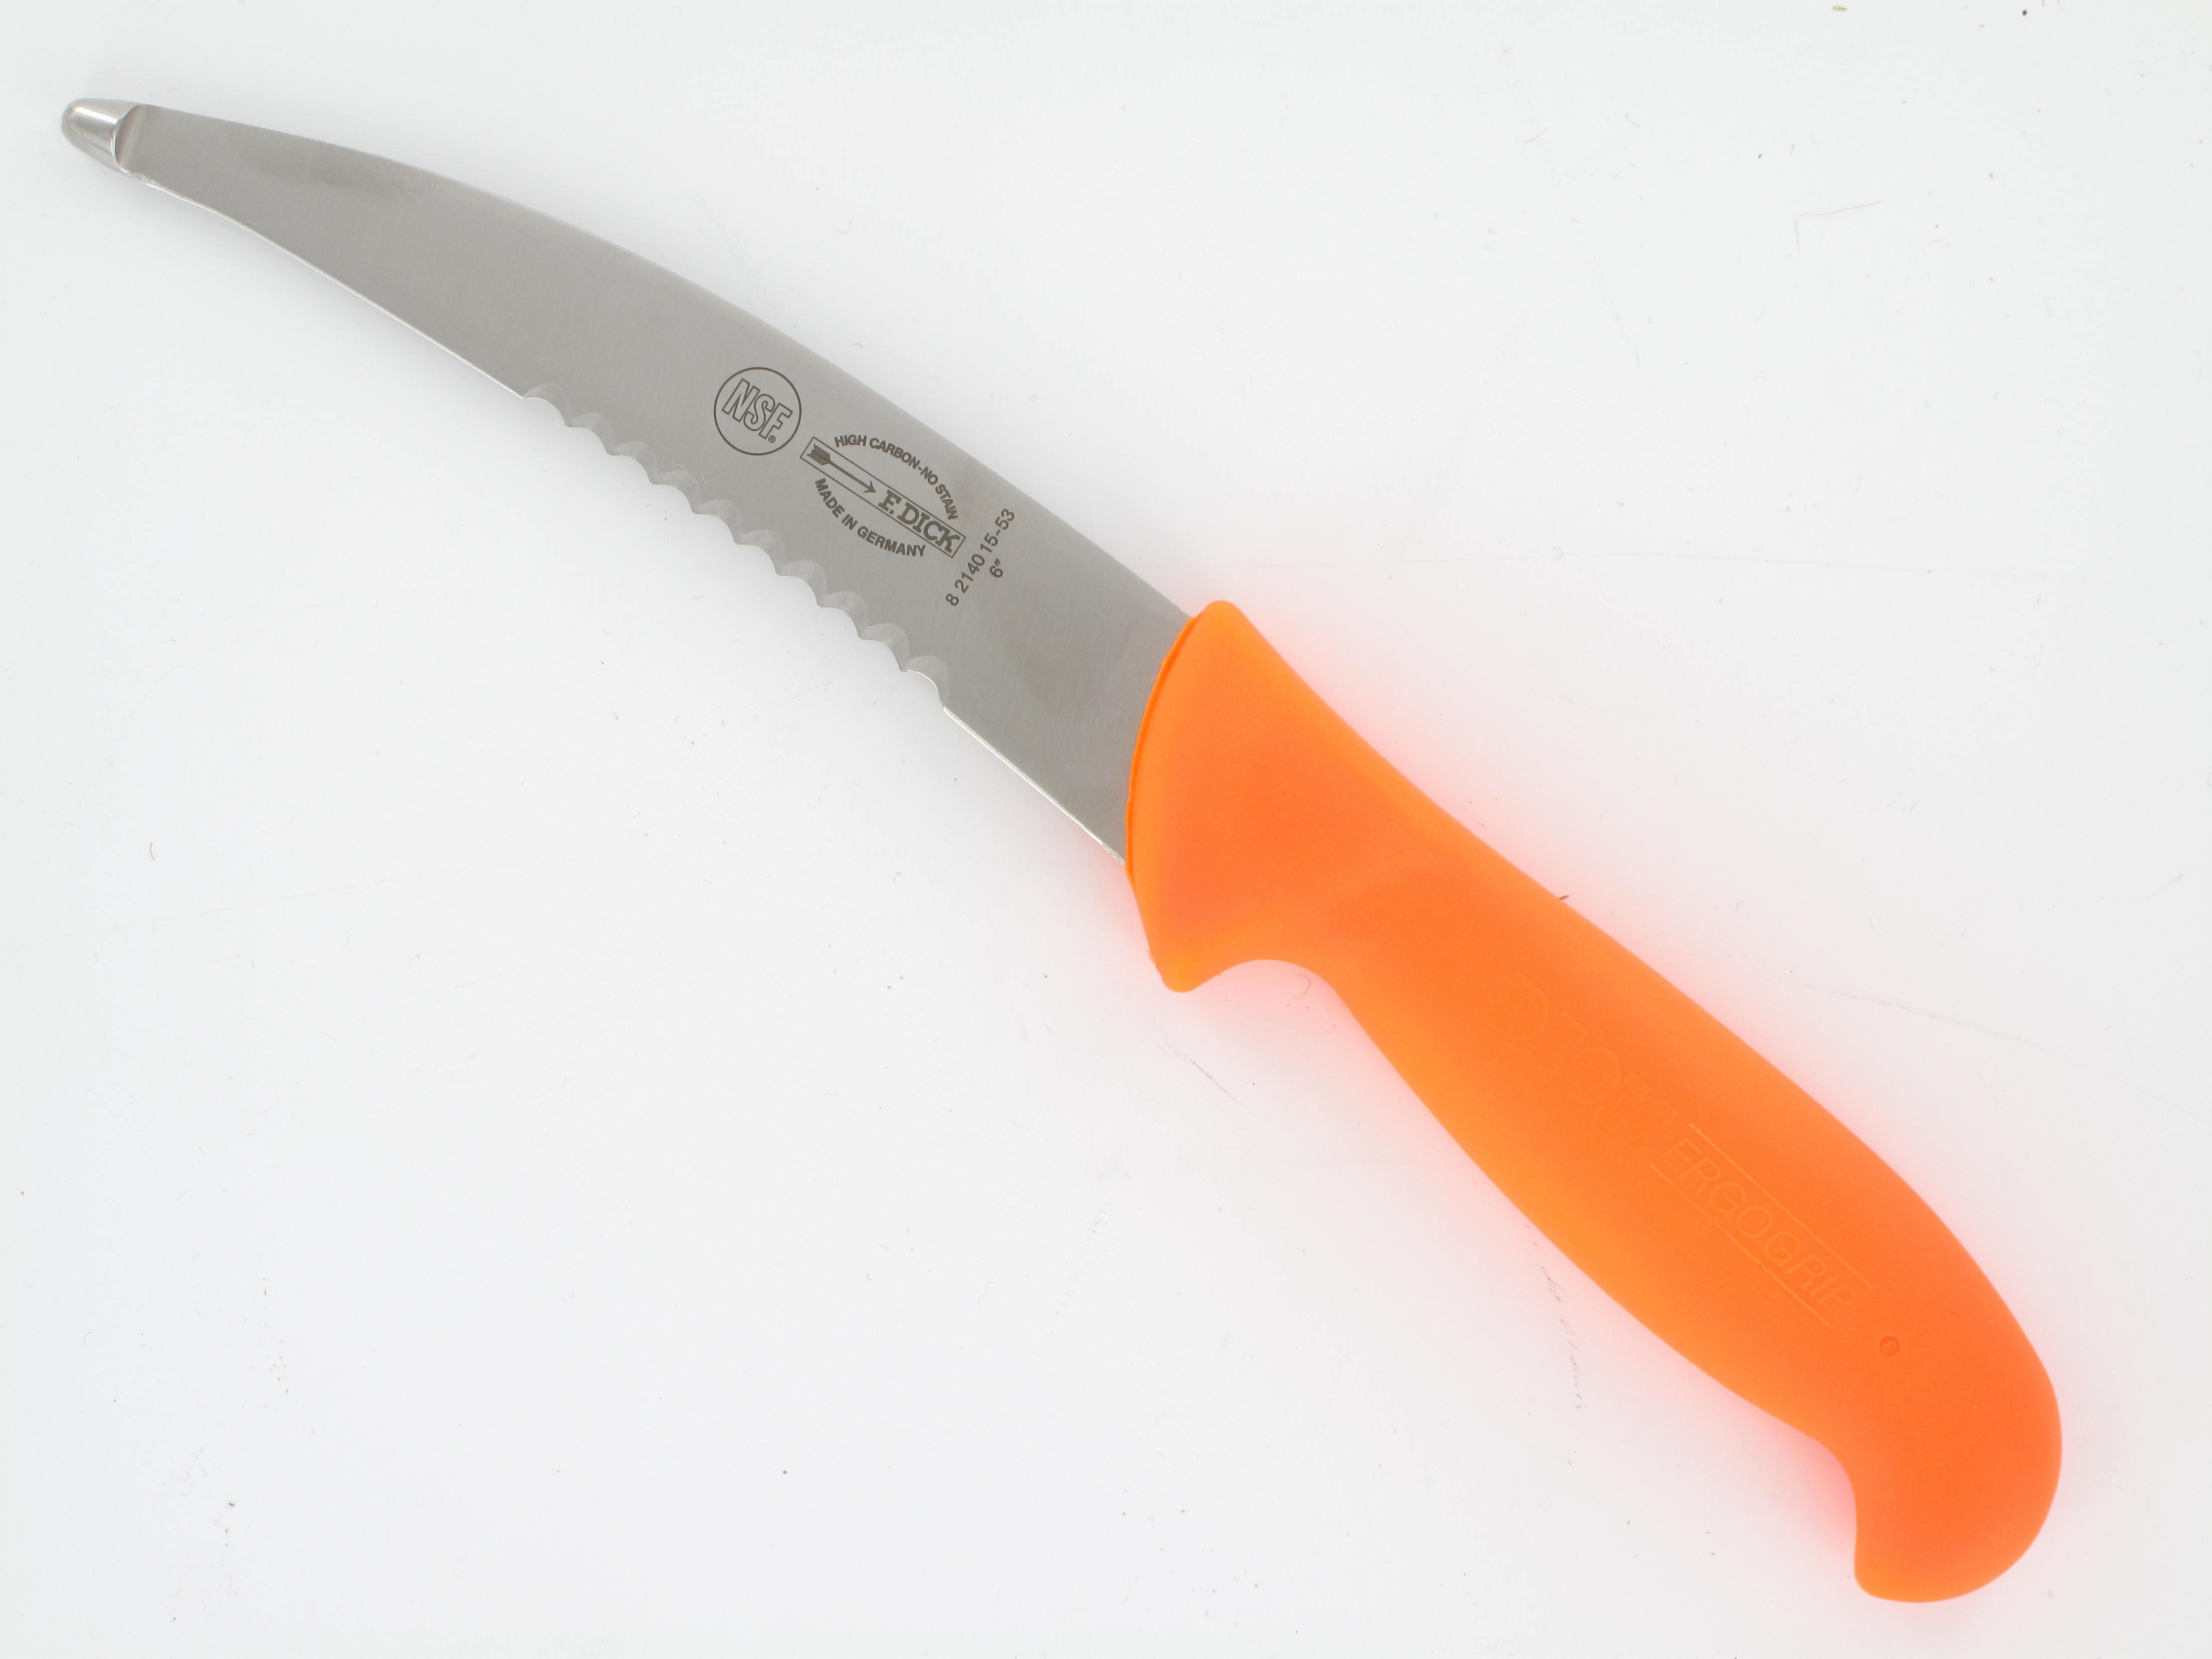 DICK Aufbrechmesser 15 cm, Griff orange, mit Säge, für Schalenwild